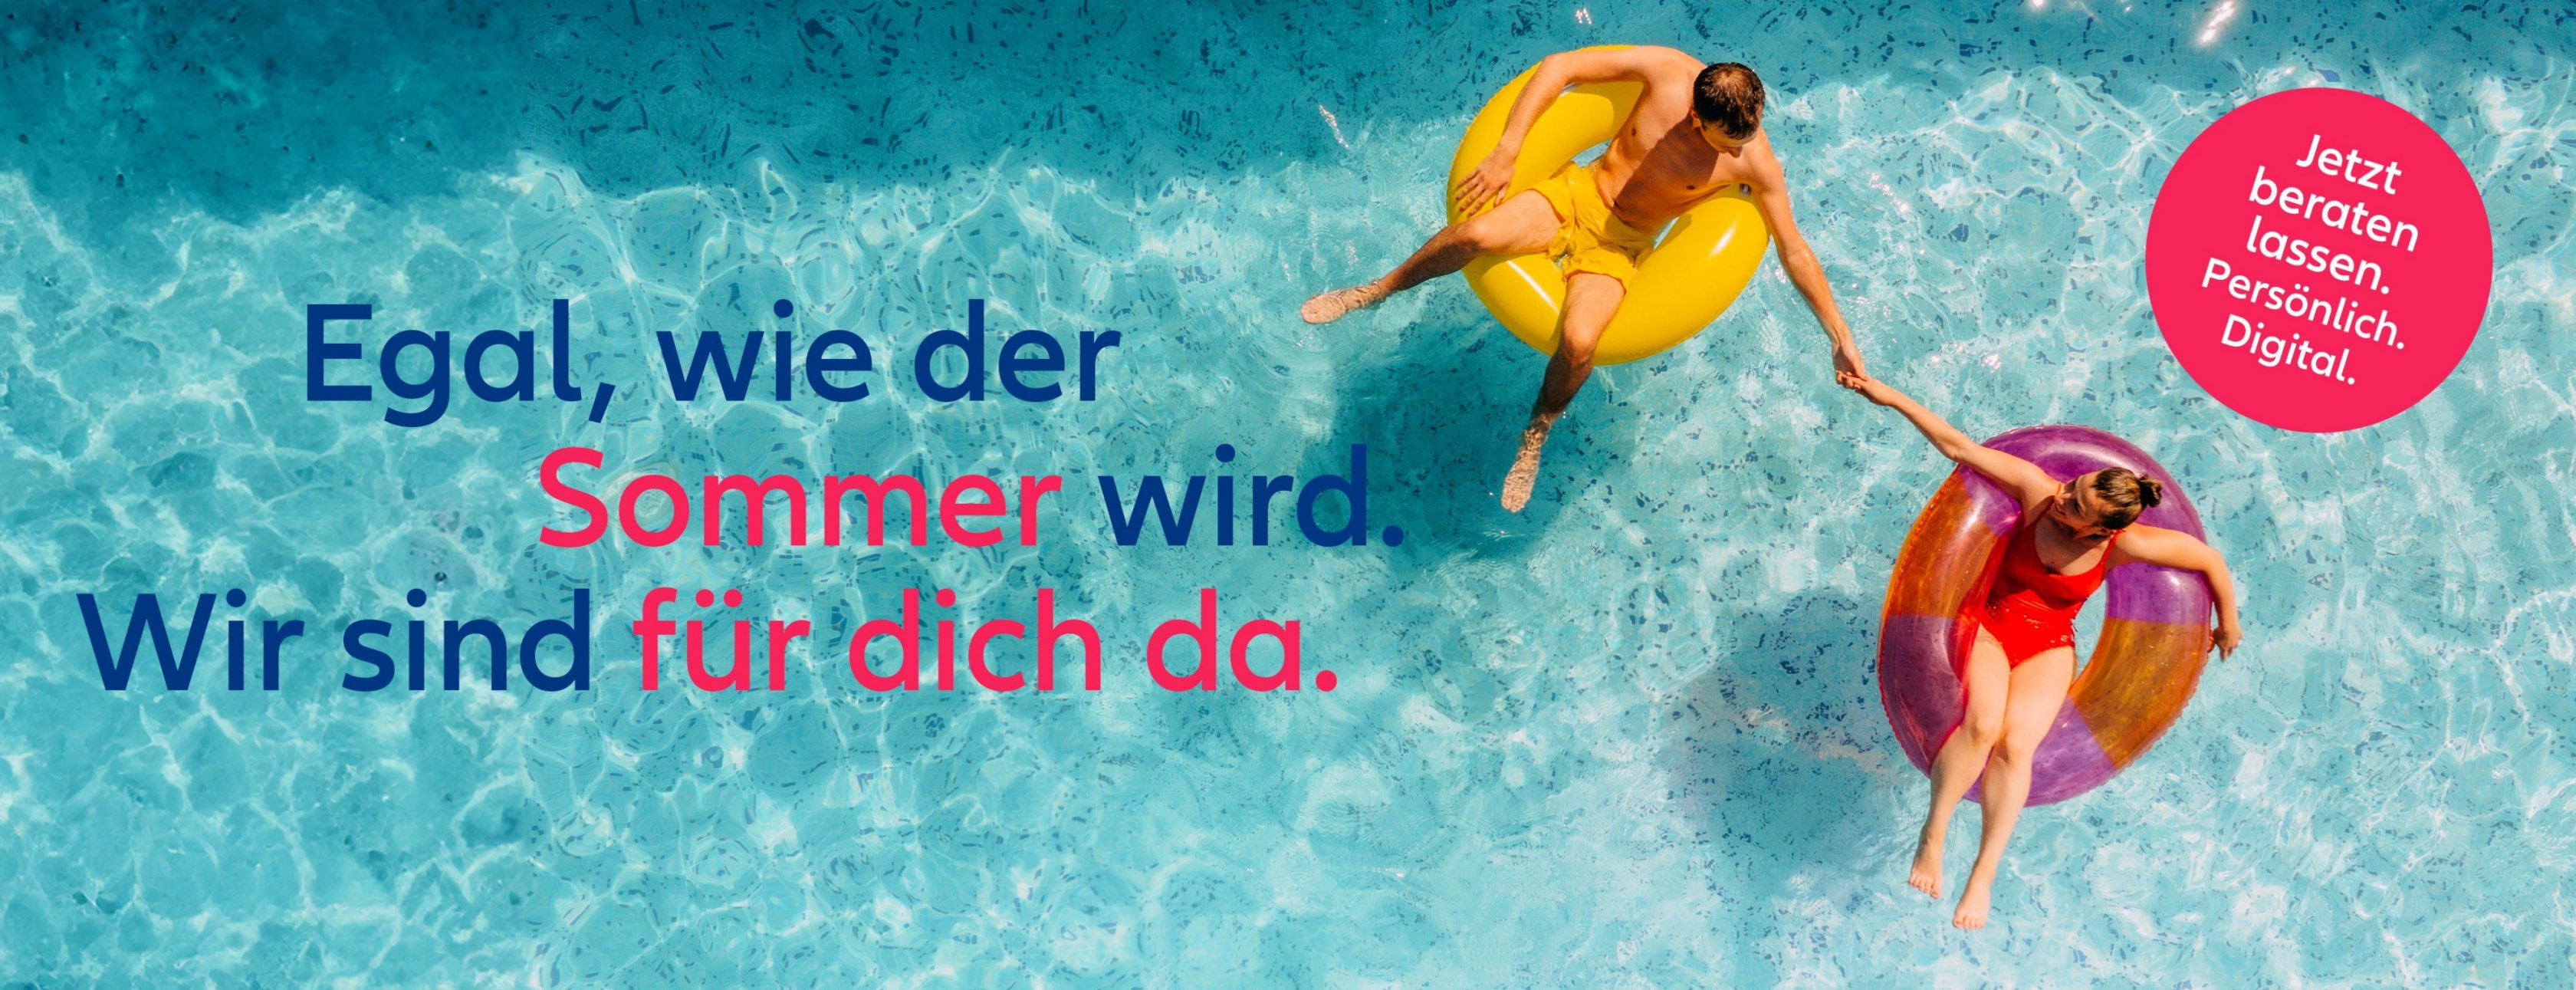 Allianz Versicherung Heike Heinen Trier - Sommer Sonne menschen 